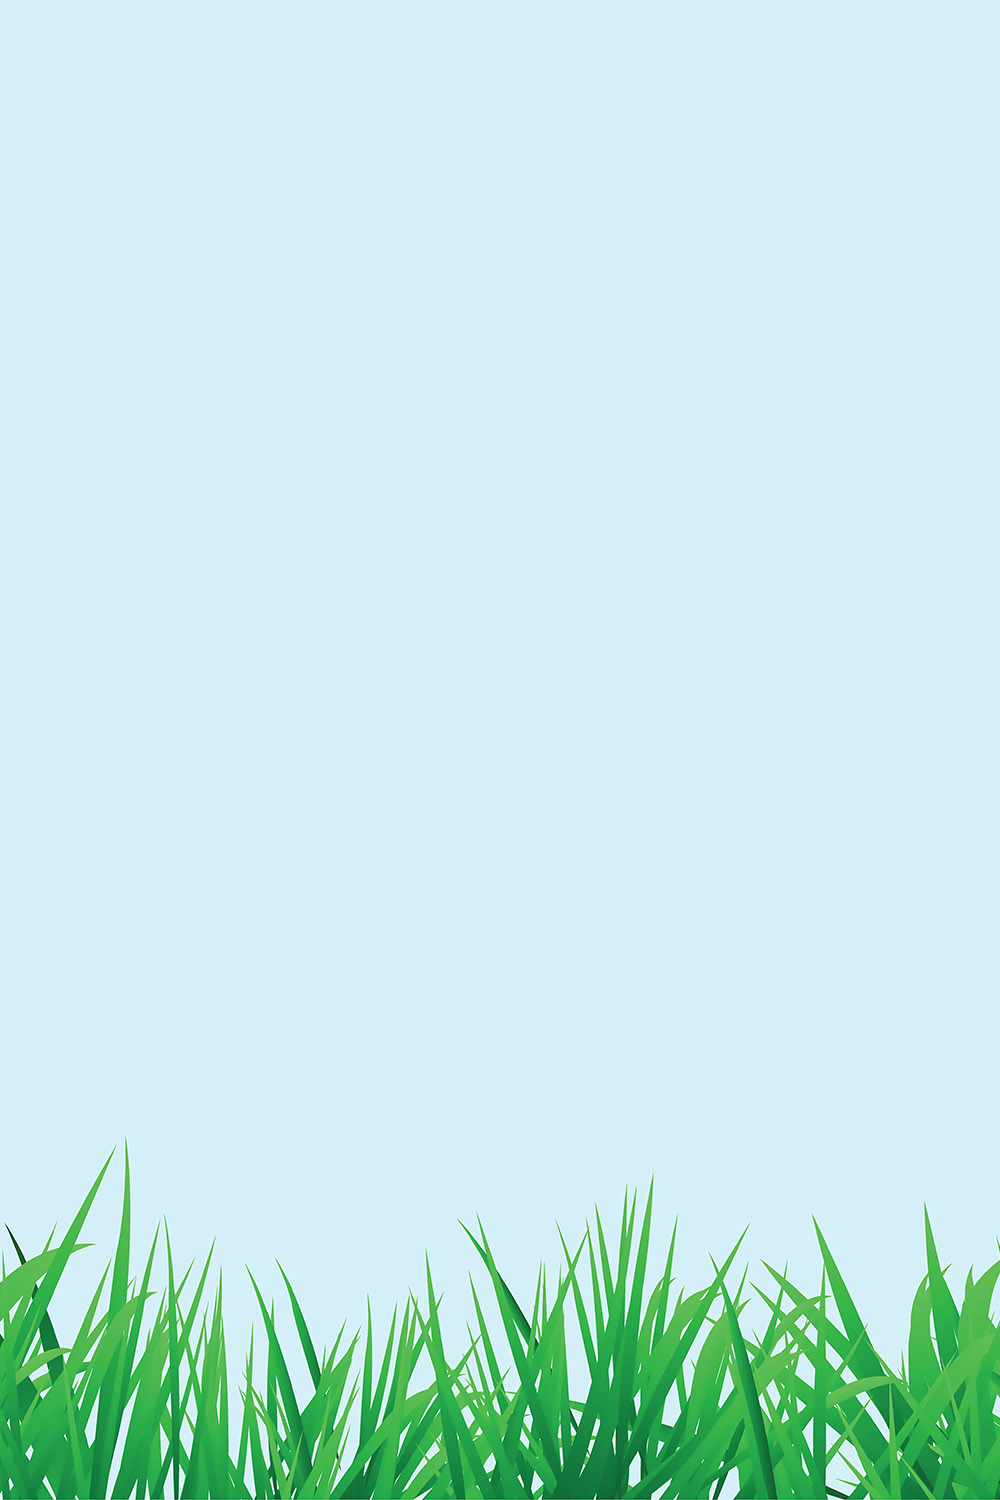 Spring Grass Background